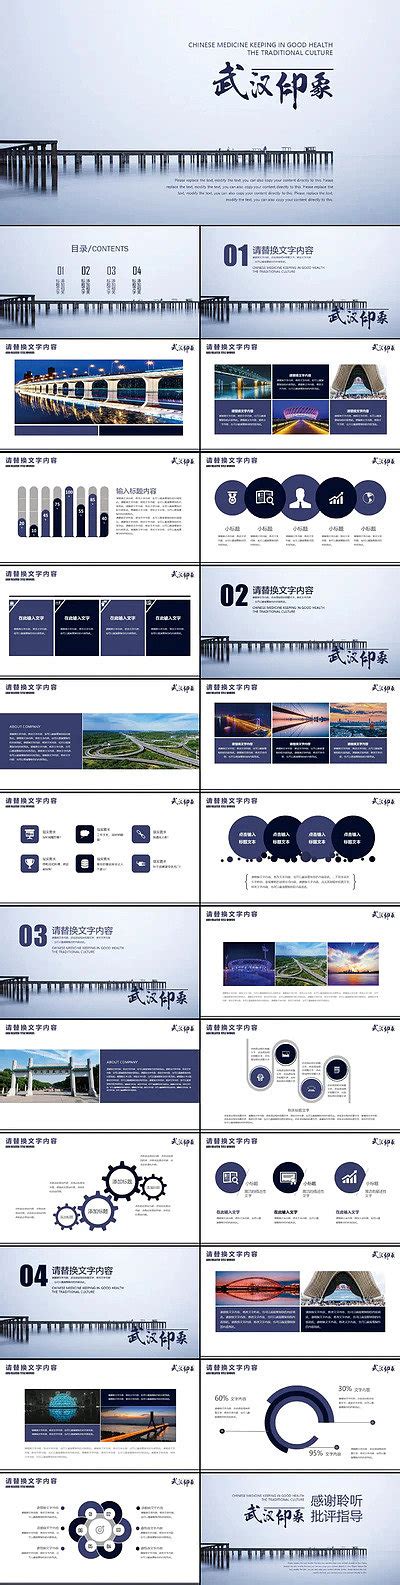 武汉印象城市旅游旅行宣传推广PPT模板